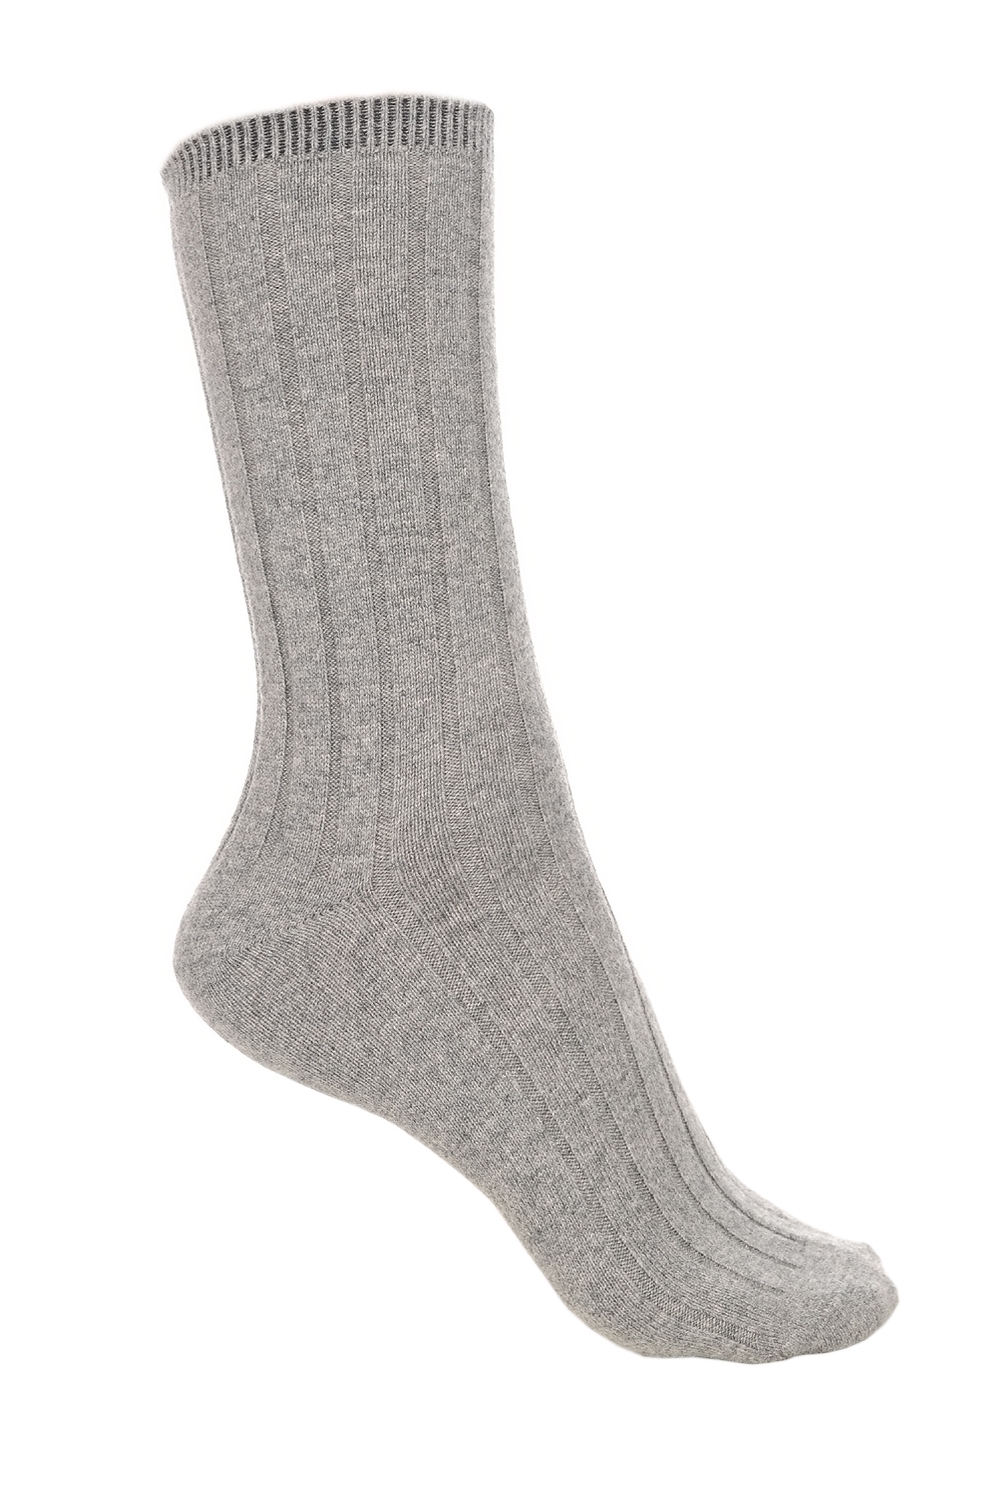 Cashmere & Elastaan accessoires sokken dragibus w grijs gemeleerd 39 42